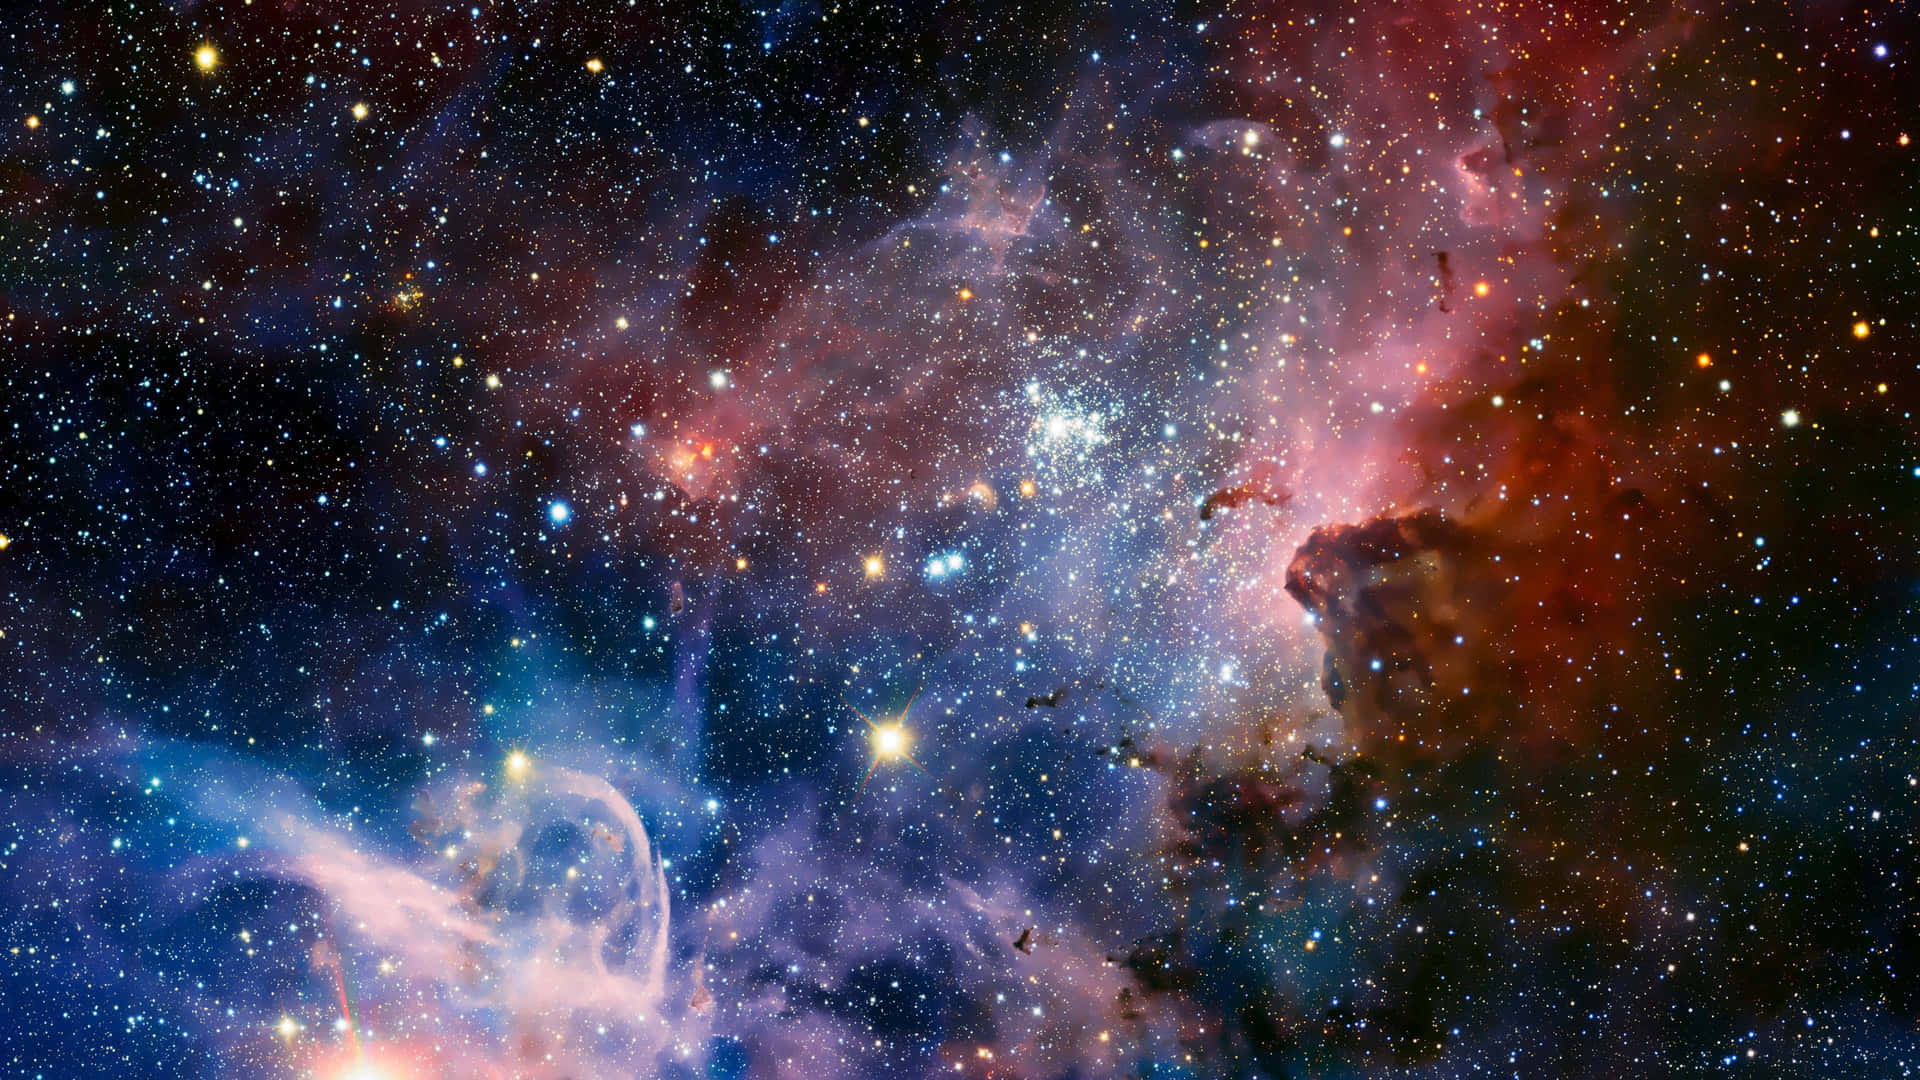 Nebulabilder